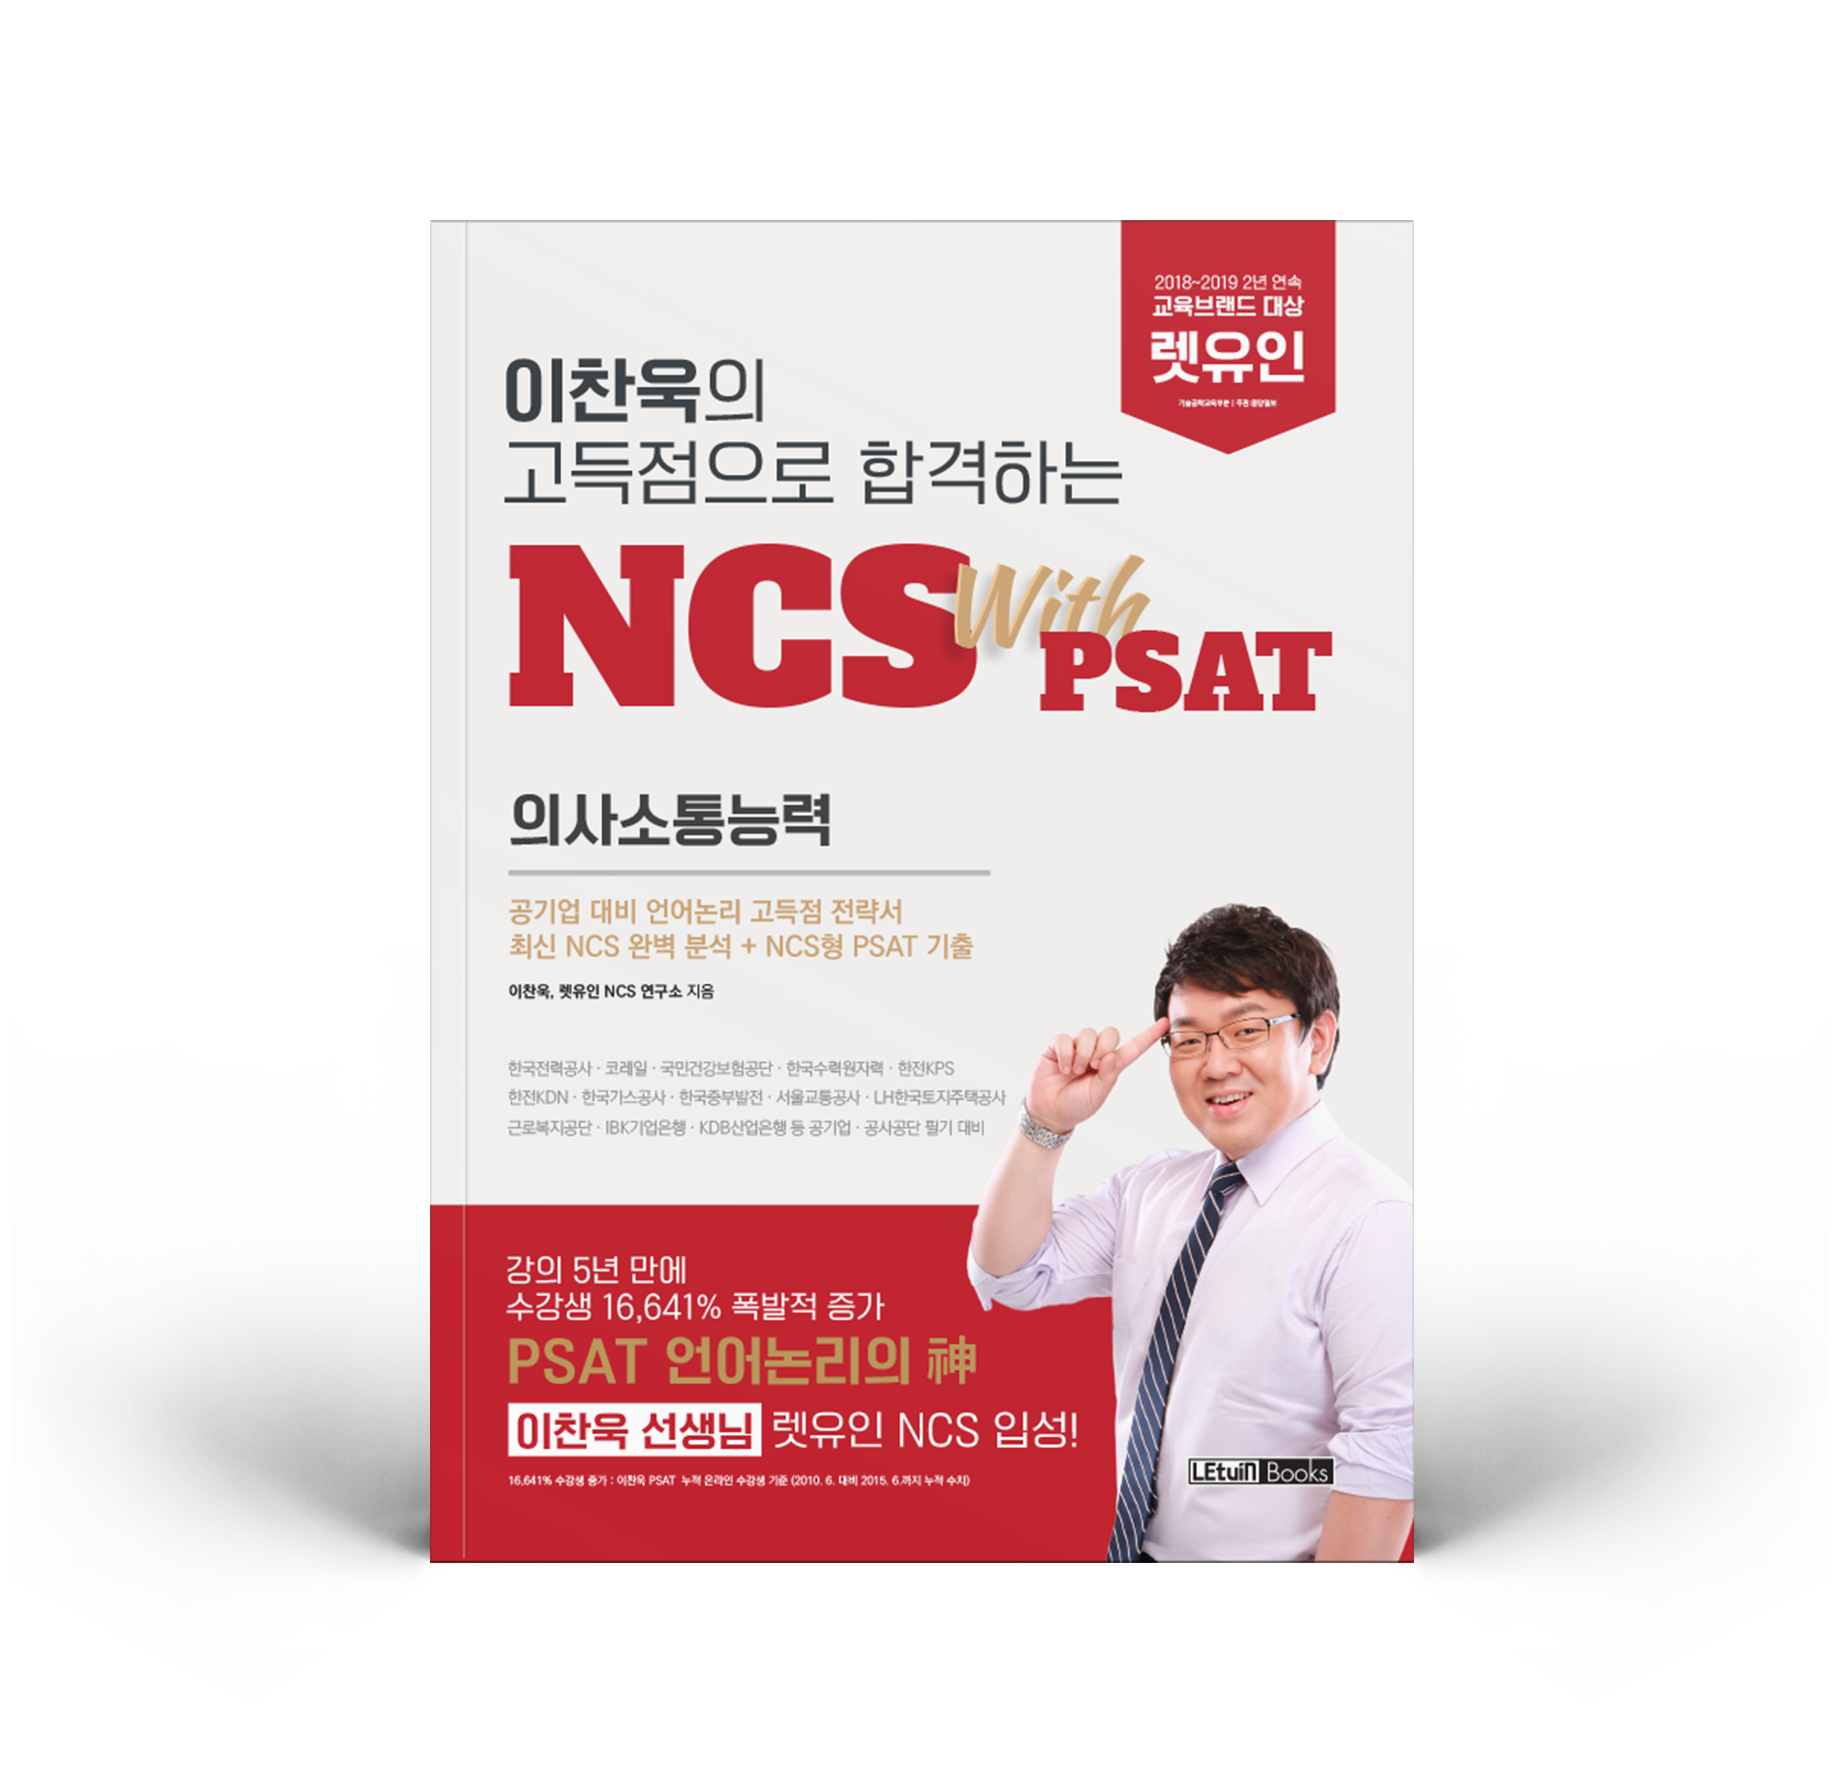 이찬욱의 고득점으로 합격하는 NCS with PSAT 의사소통능력